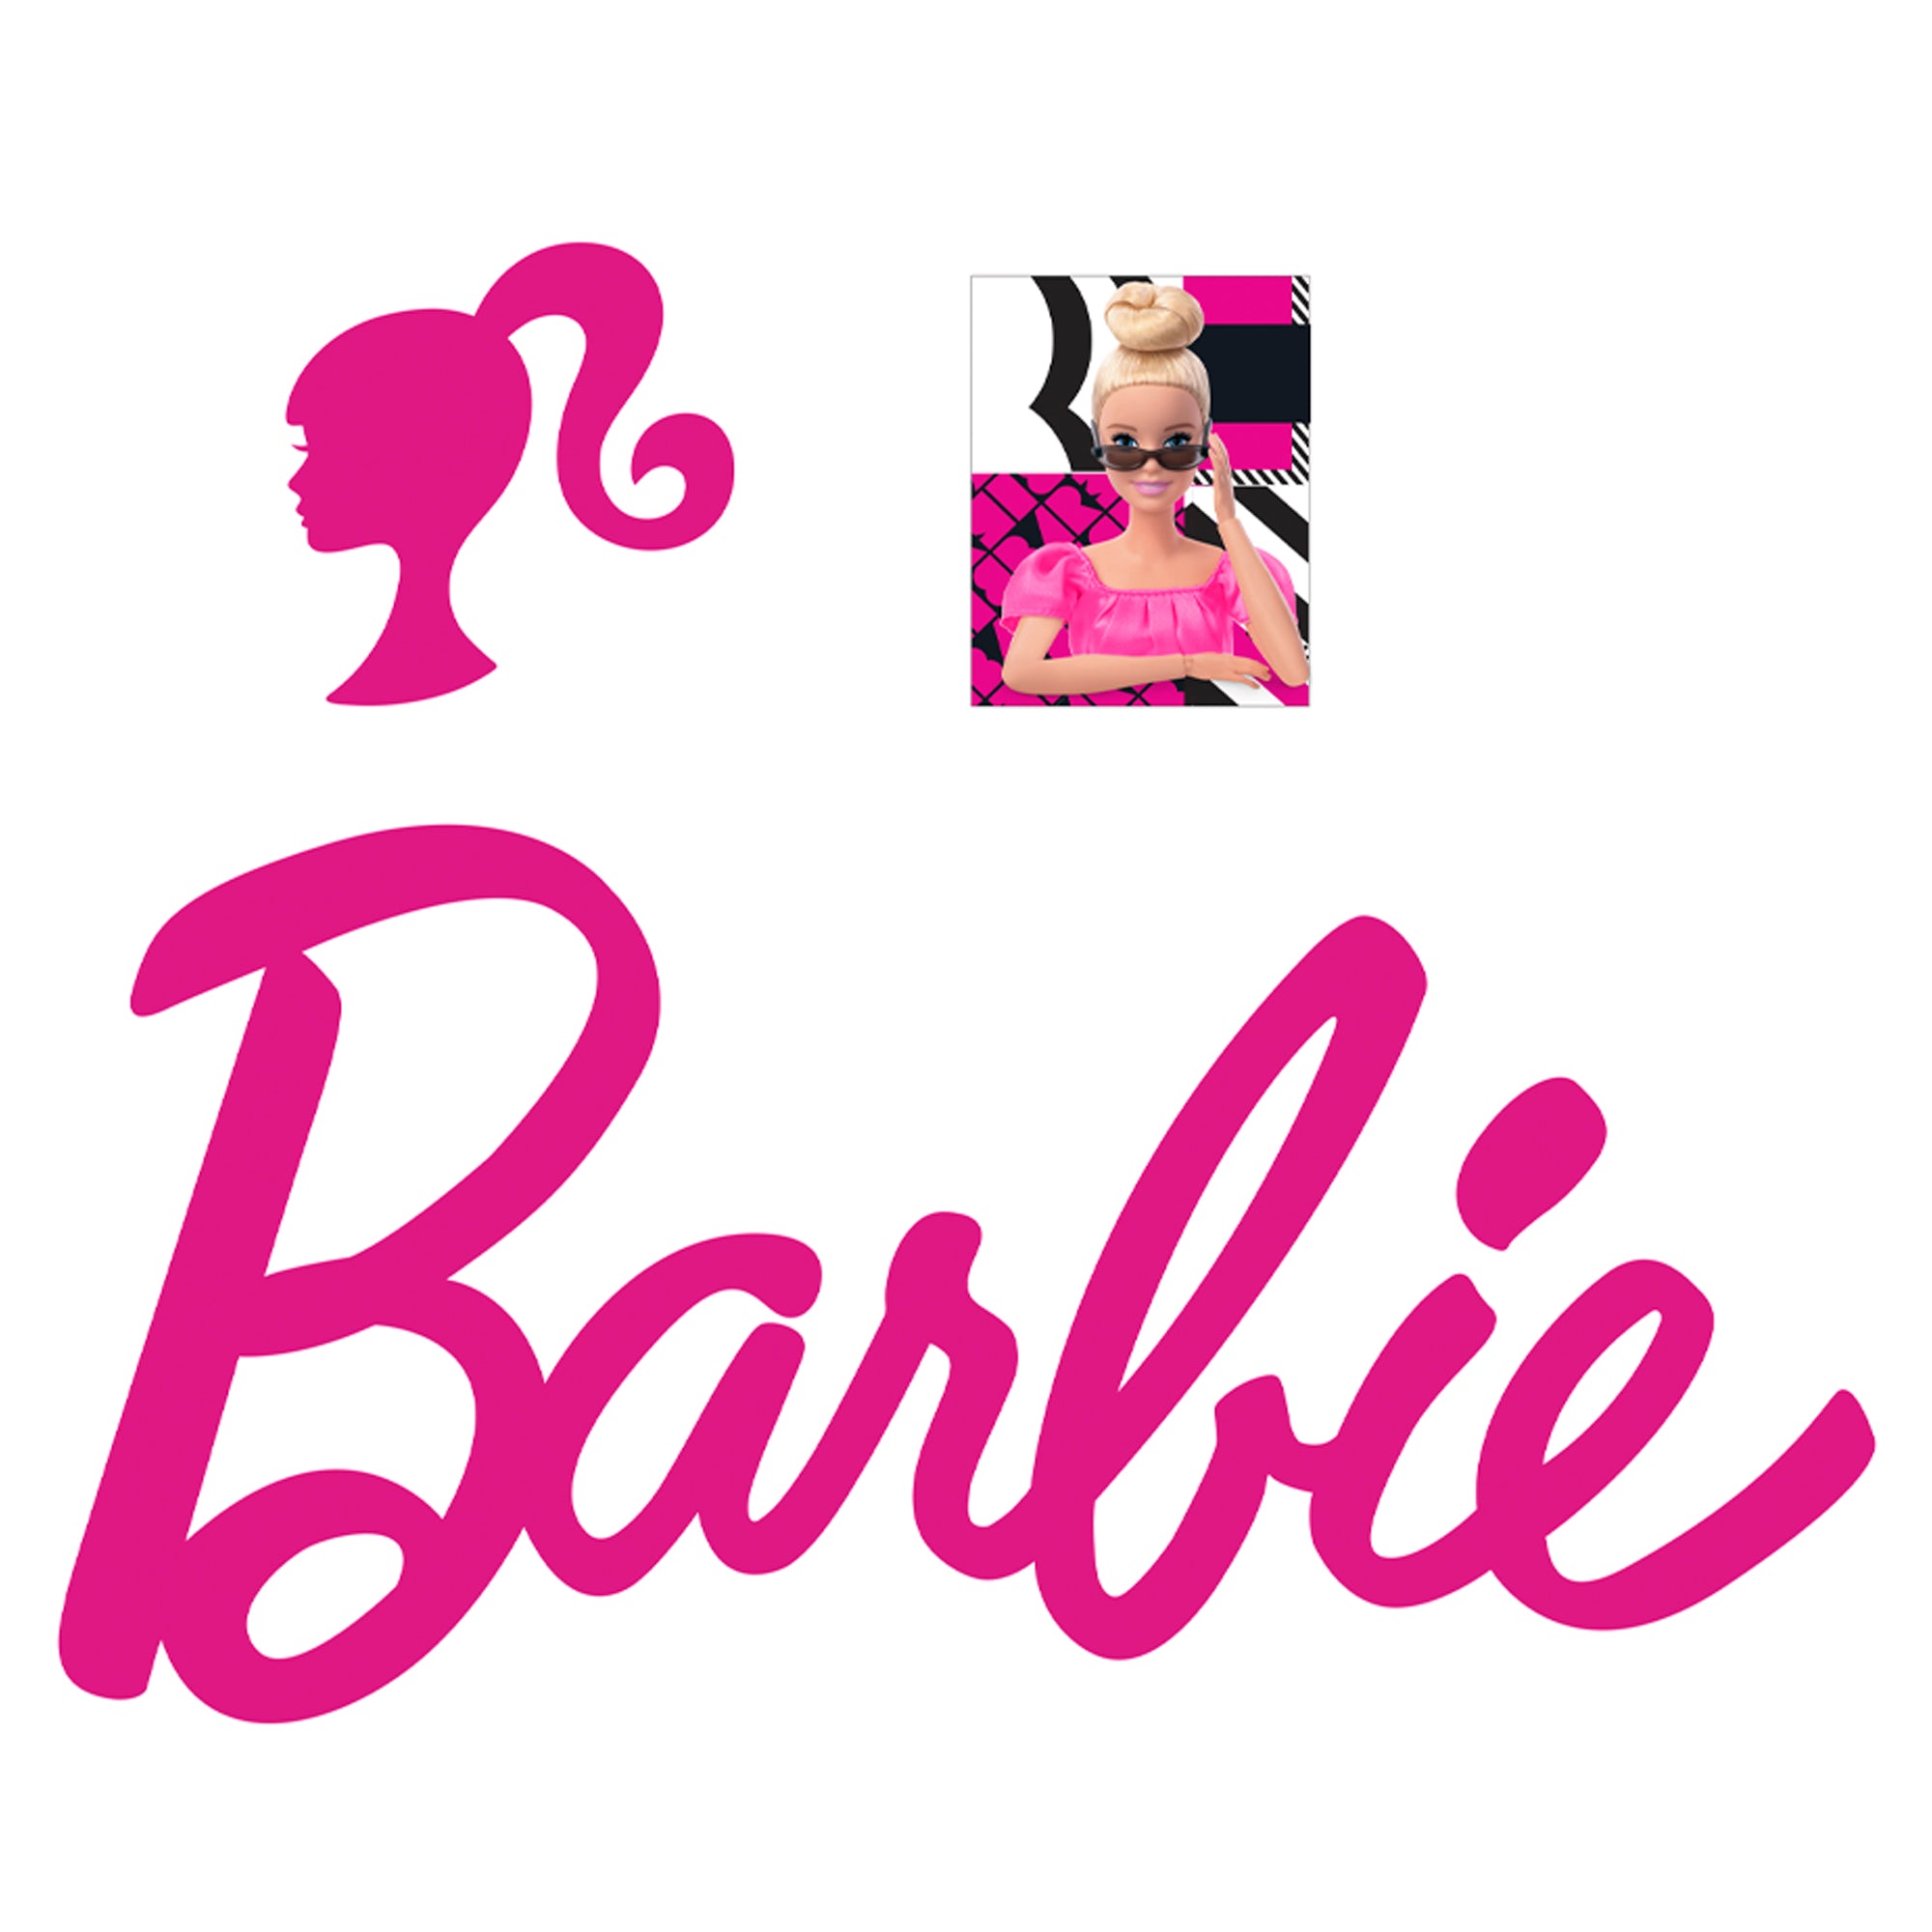 Barbie realbig logo logo